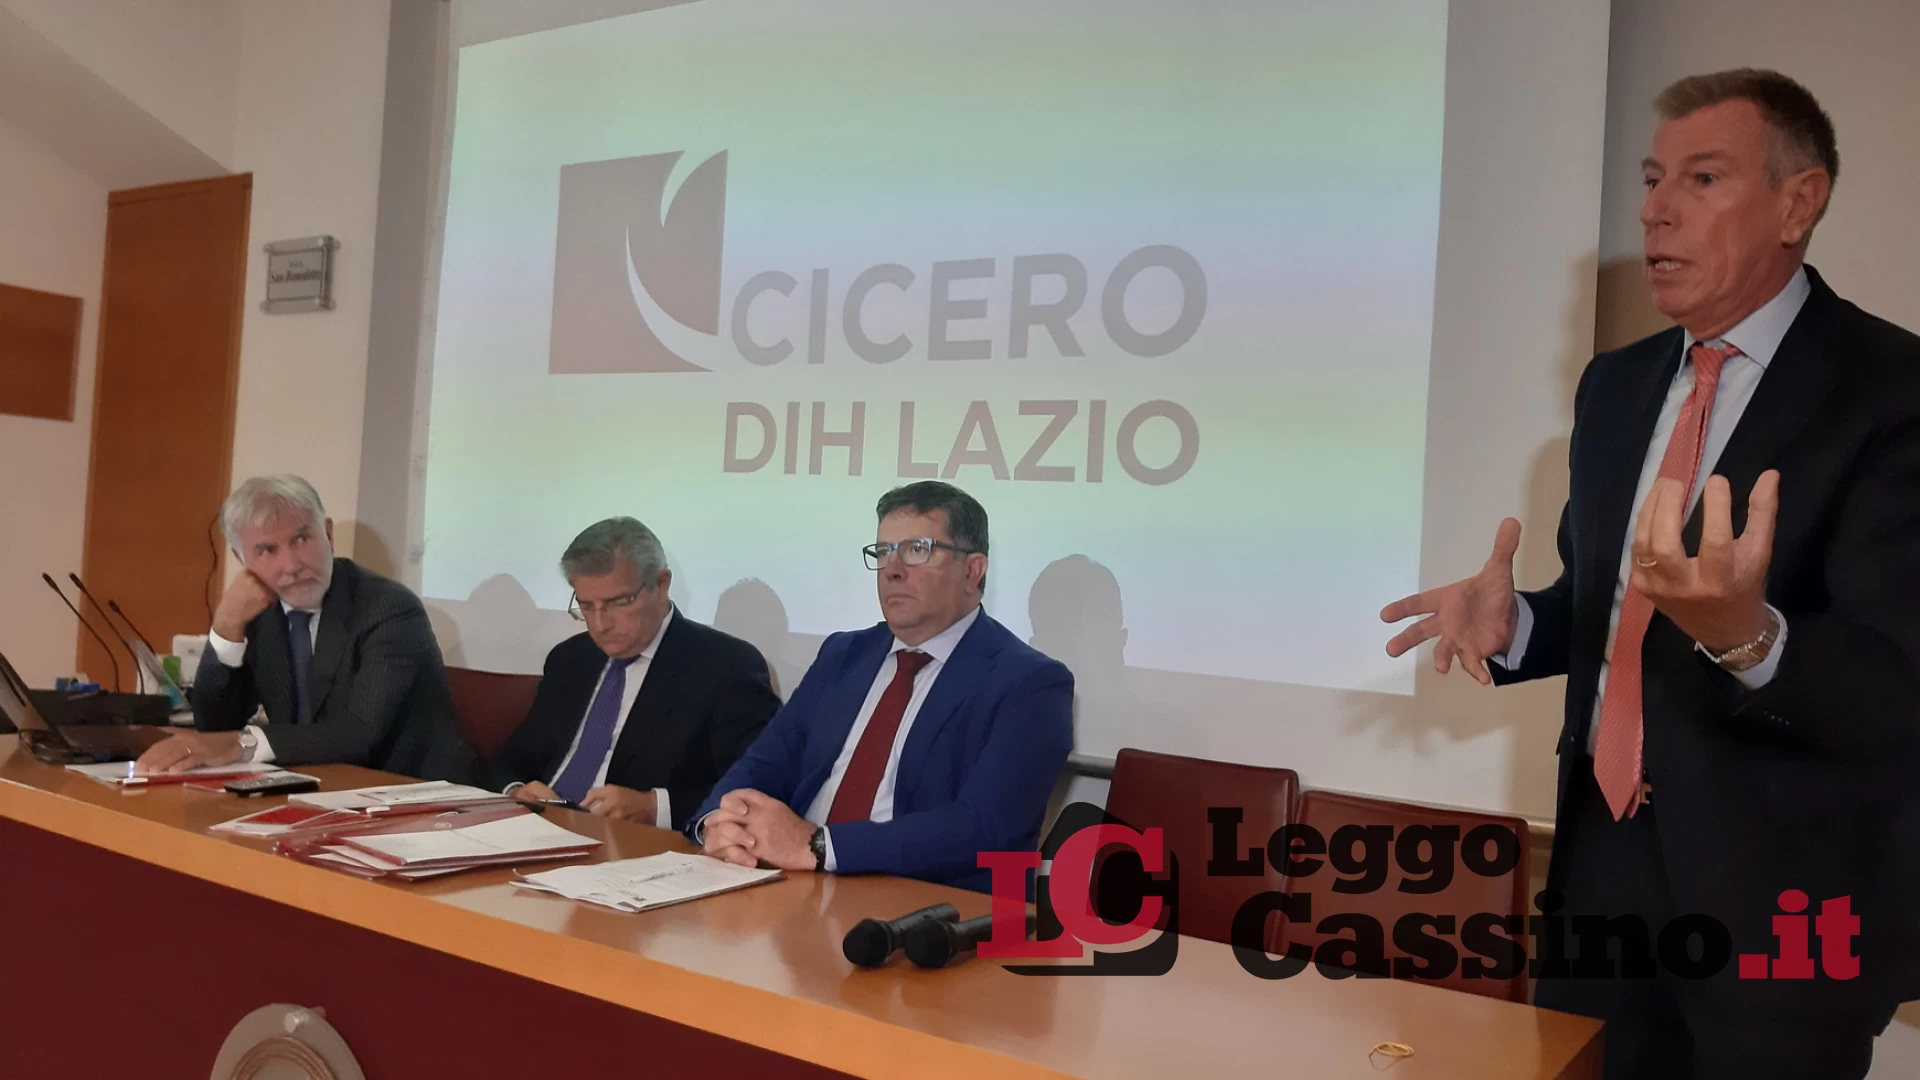 BpC e Cicero DIH Lazio insieme per la digitalizzazione delle Pmi